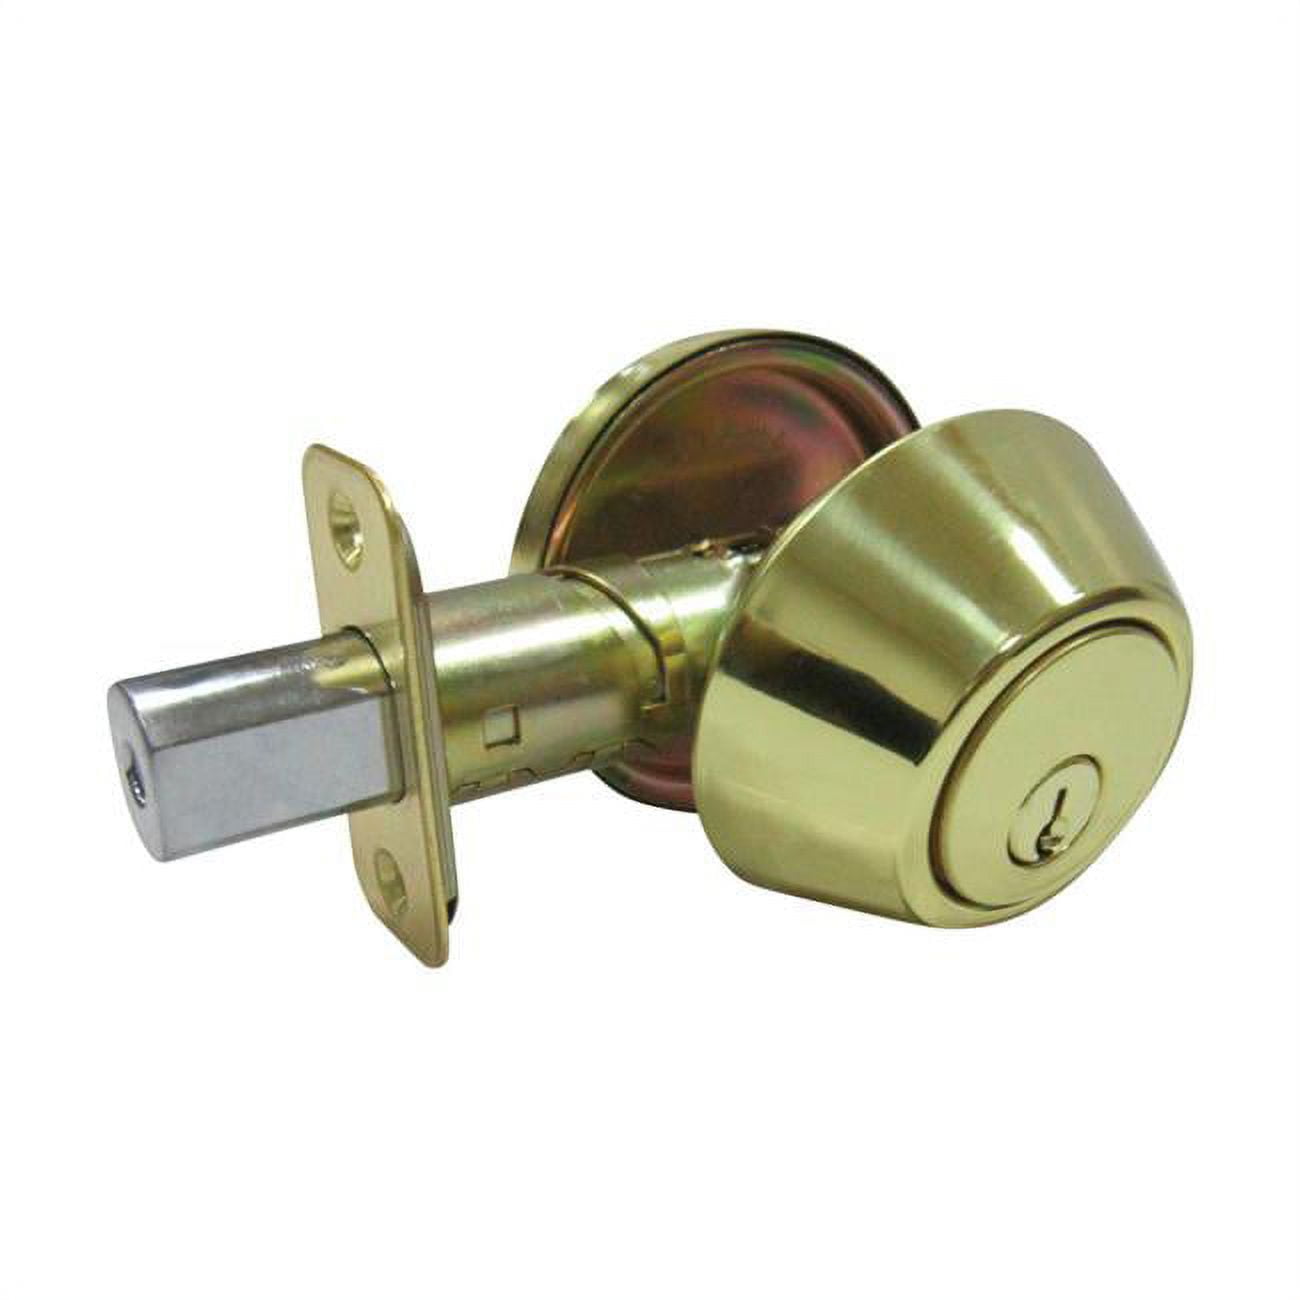 5002072 Polished Brass Metal Single Cylinder Deadbolt - Ansi Grade 3, 1.75 In.